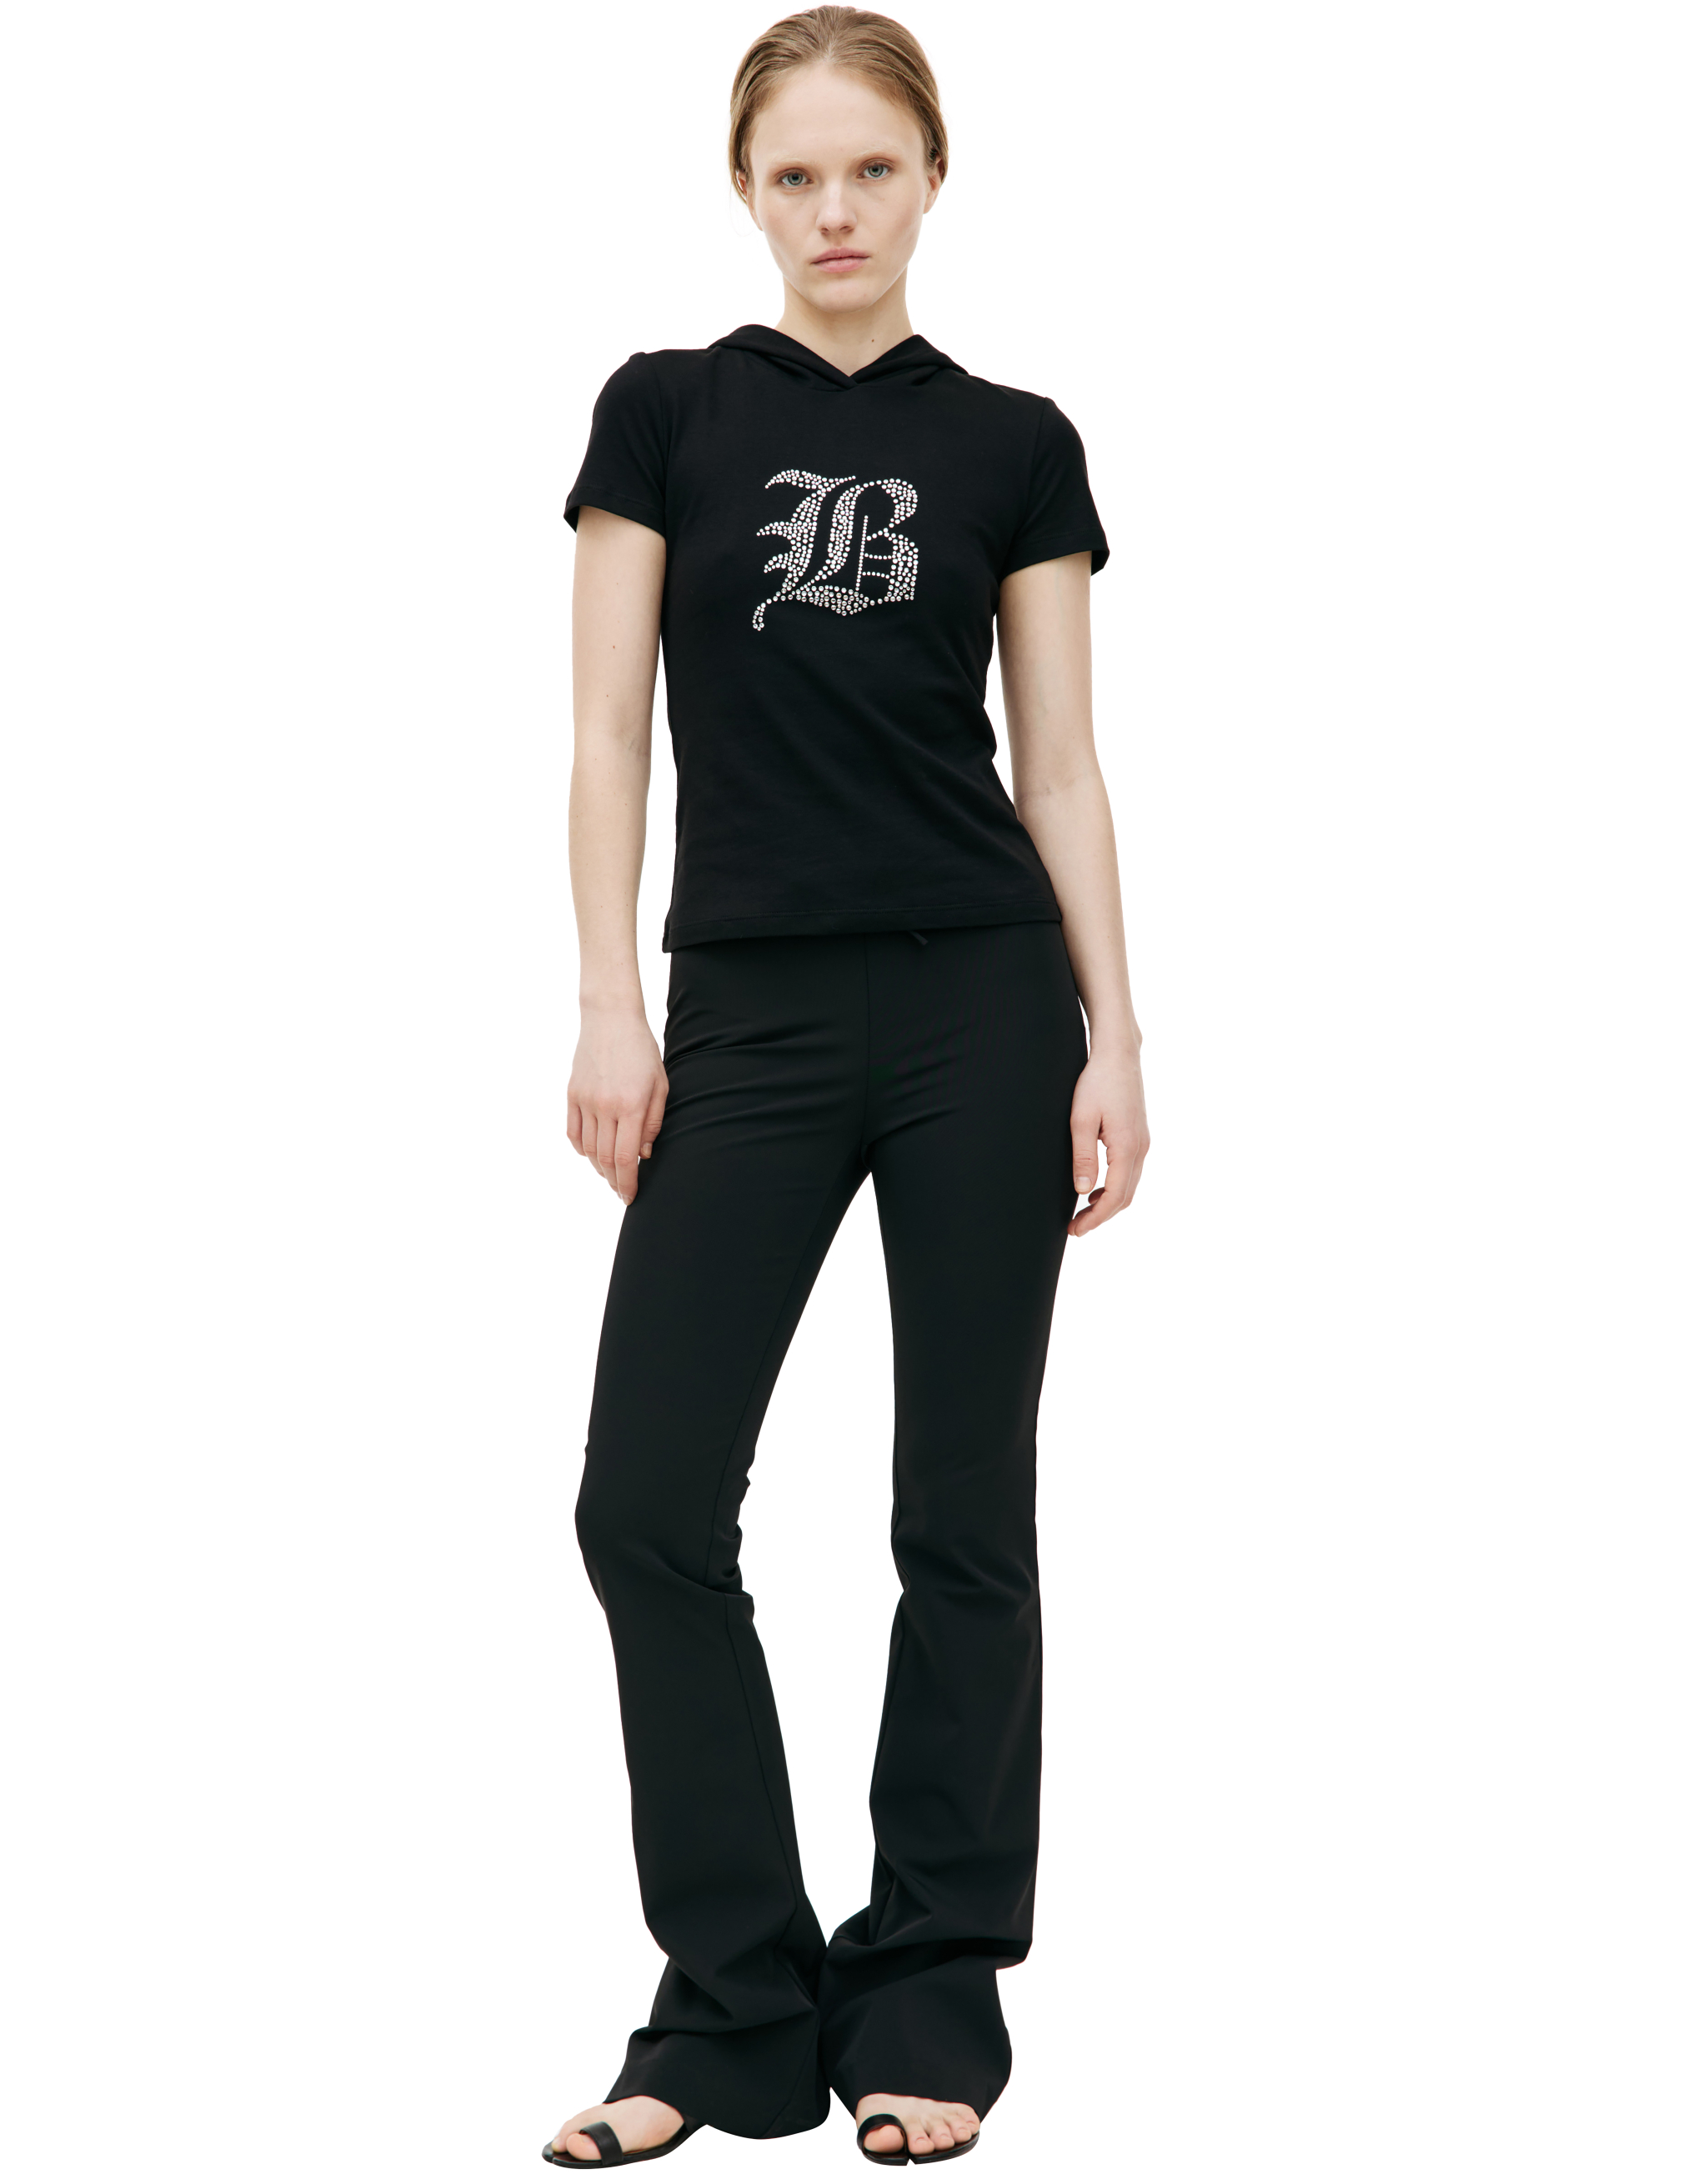 Черная футболка с капюшоном Blumarine P42/2T053A/N0990, размер S;L P42/2T053A/N0990 - фото 1